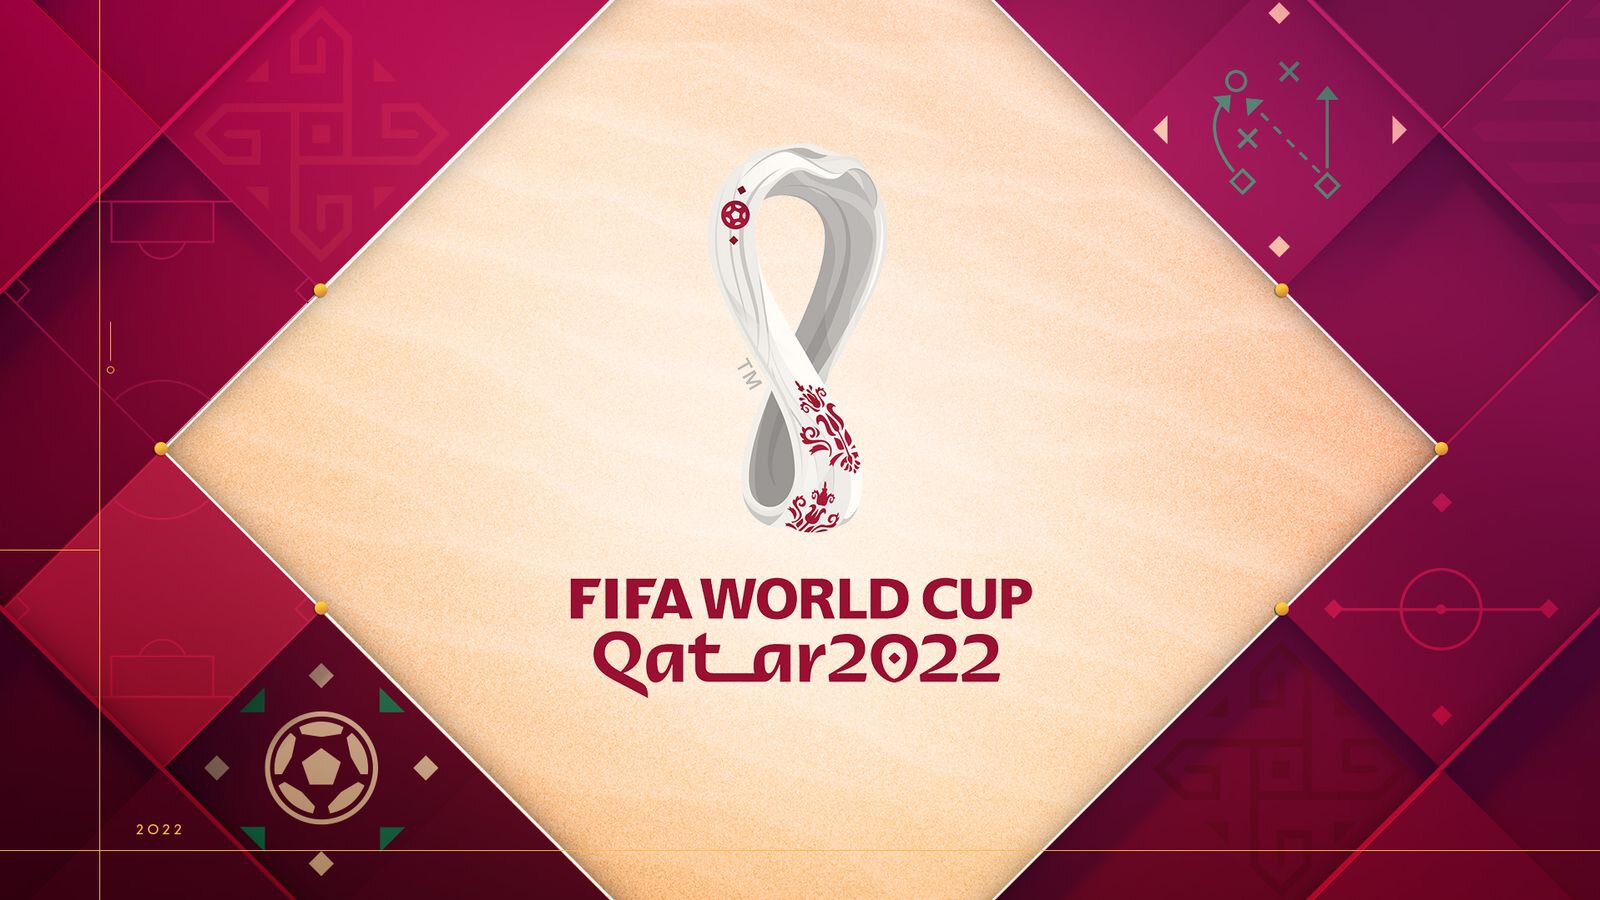 ЧМ-2022 стартовал! Катар проиграл Эквадору в матче открытия  0:2. Валенсия сделал дубль